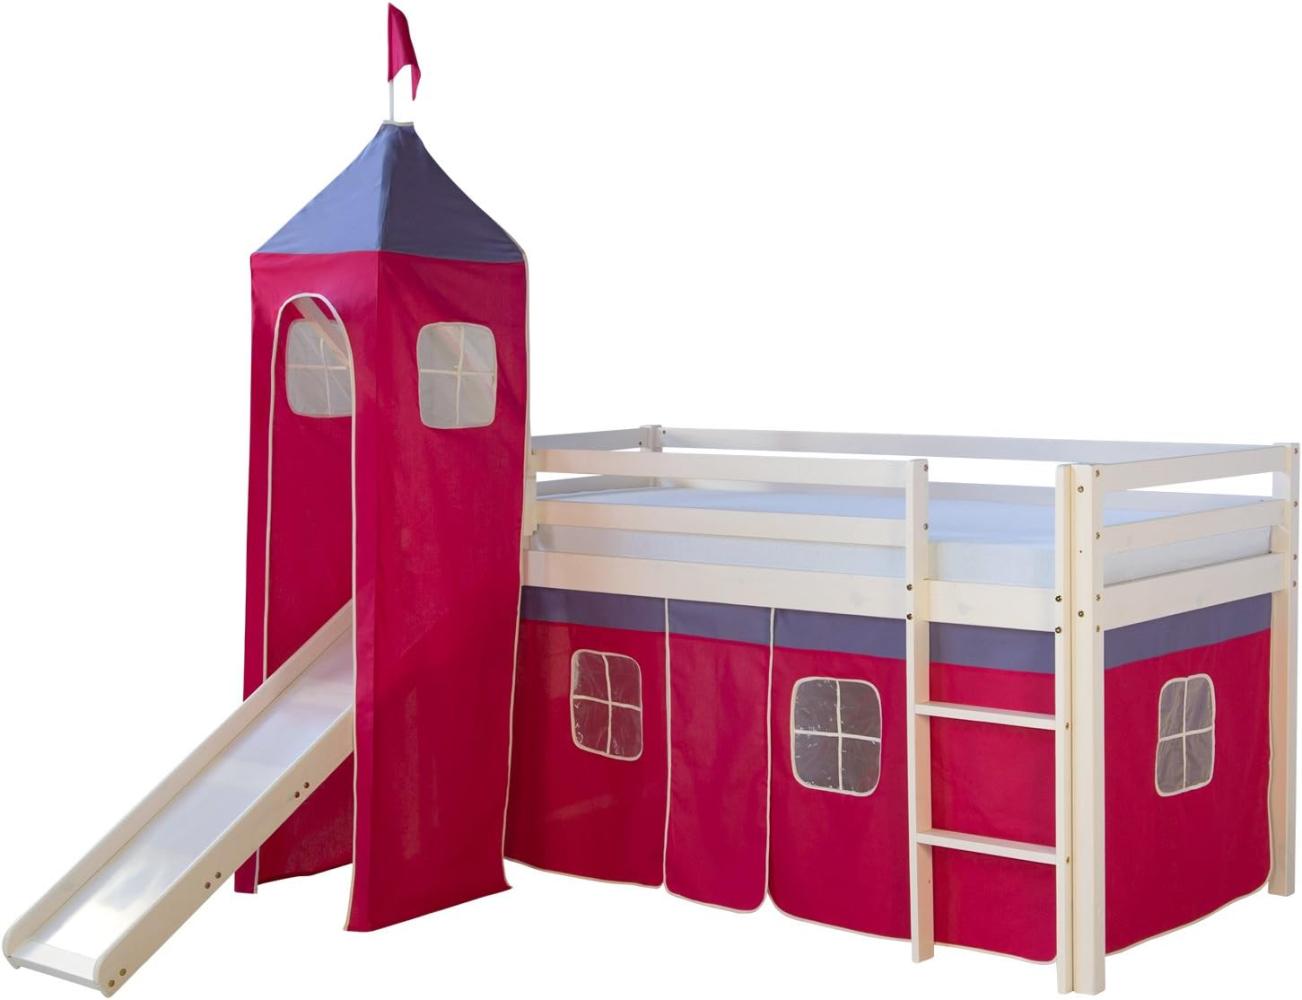 Homestyle4u Spielbett mit Turm und Rutsche, Pink, Kiefernholz pink / weiß, 90 x 200 cm Bild 1